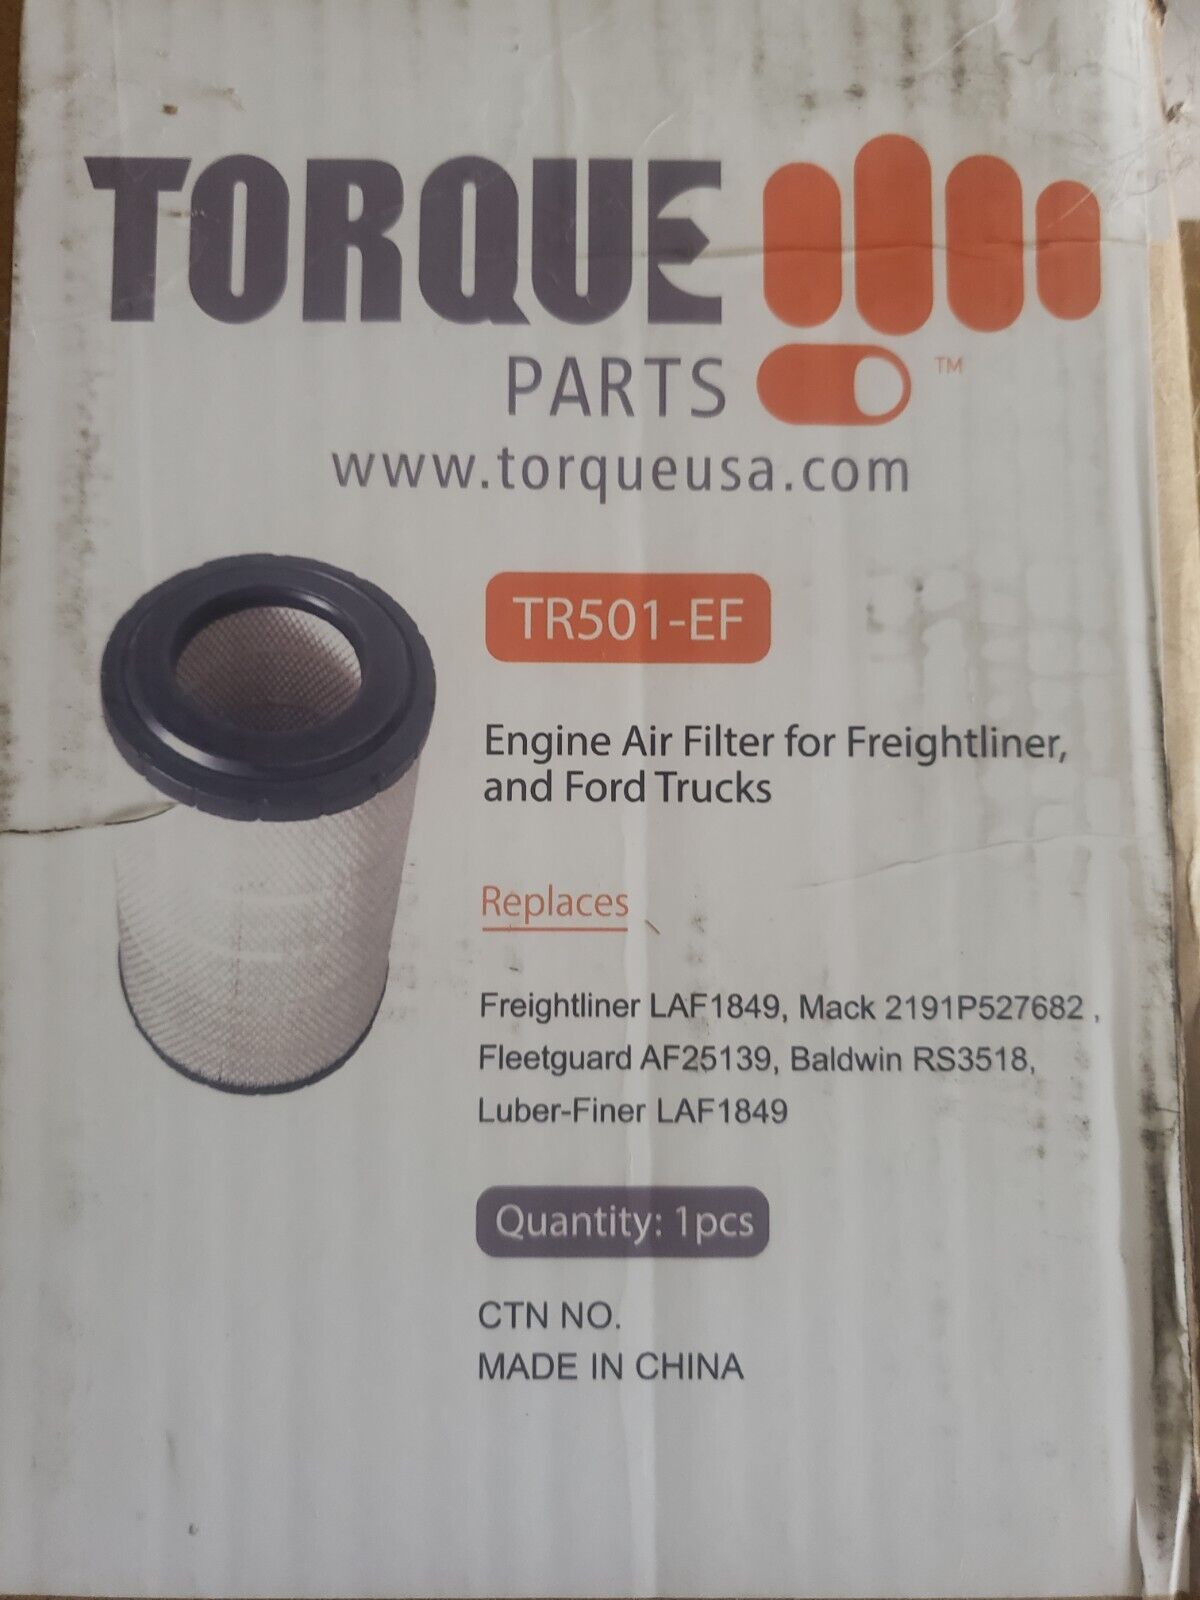 Torque Parts Air Filter Replaces RS3518,LAF1849,AF25139,mack 2191P527682,LAF1849